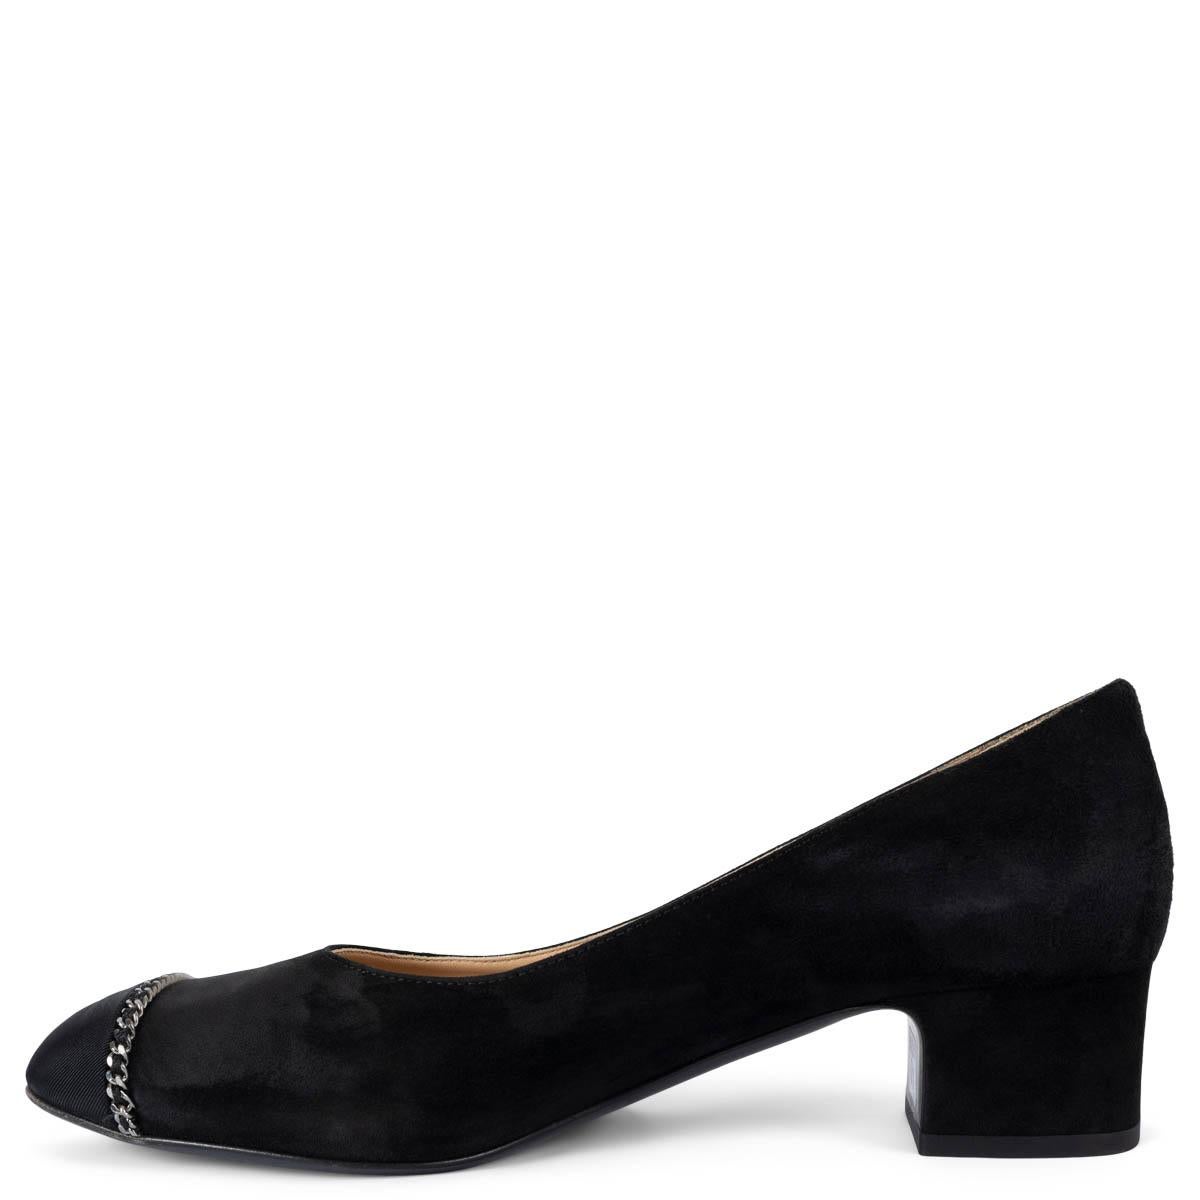 Women's CHANEL black suede 2019 19B CHAIN TRIM BLOCK HEEL Pumps Shoes 37.5 For Sale